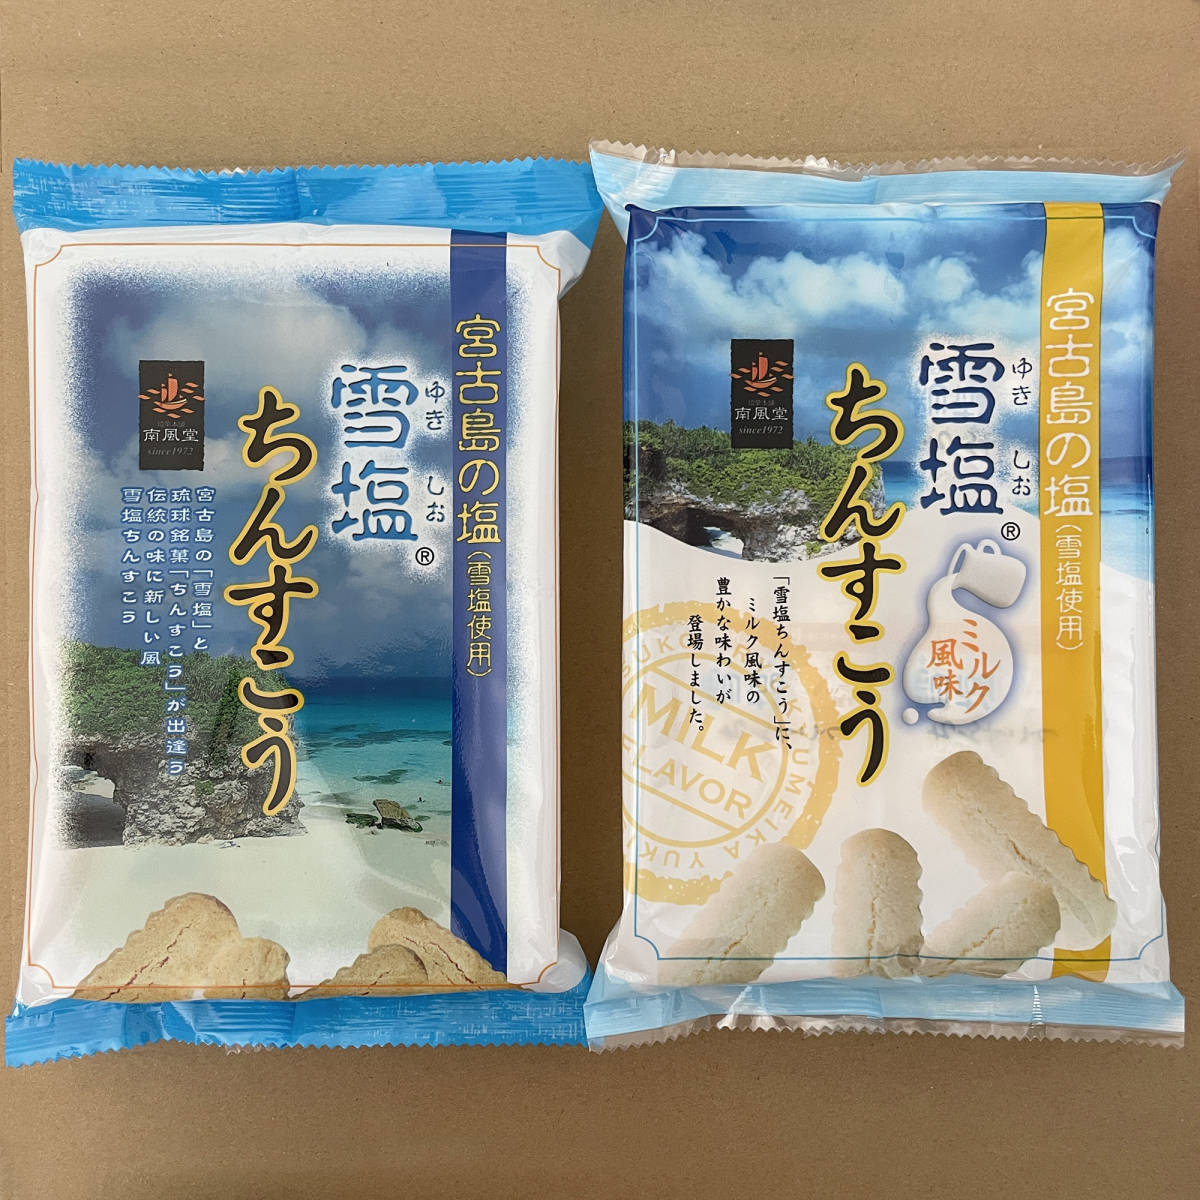 雪塩ちんすこう×ミルク風味 2袋セット 中袋タイプ 琉球銘菓 沖縄南風堂_画像2